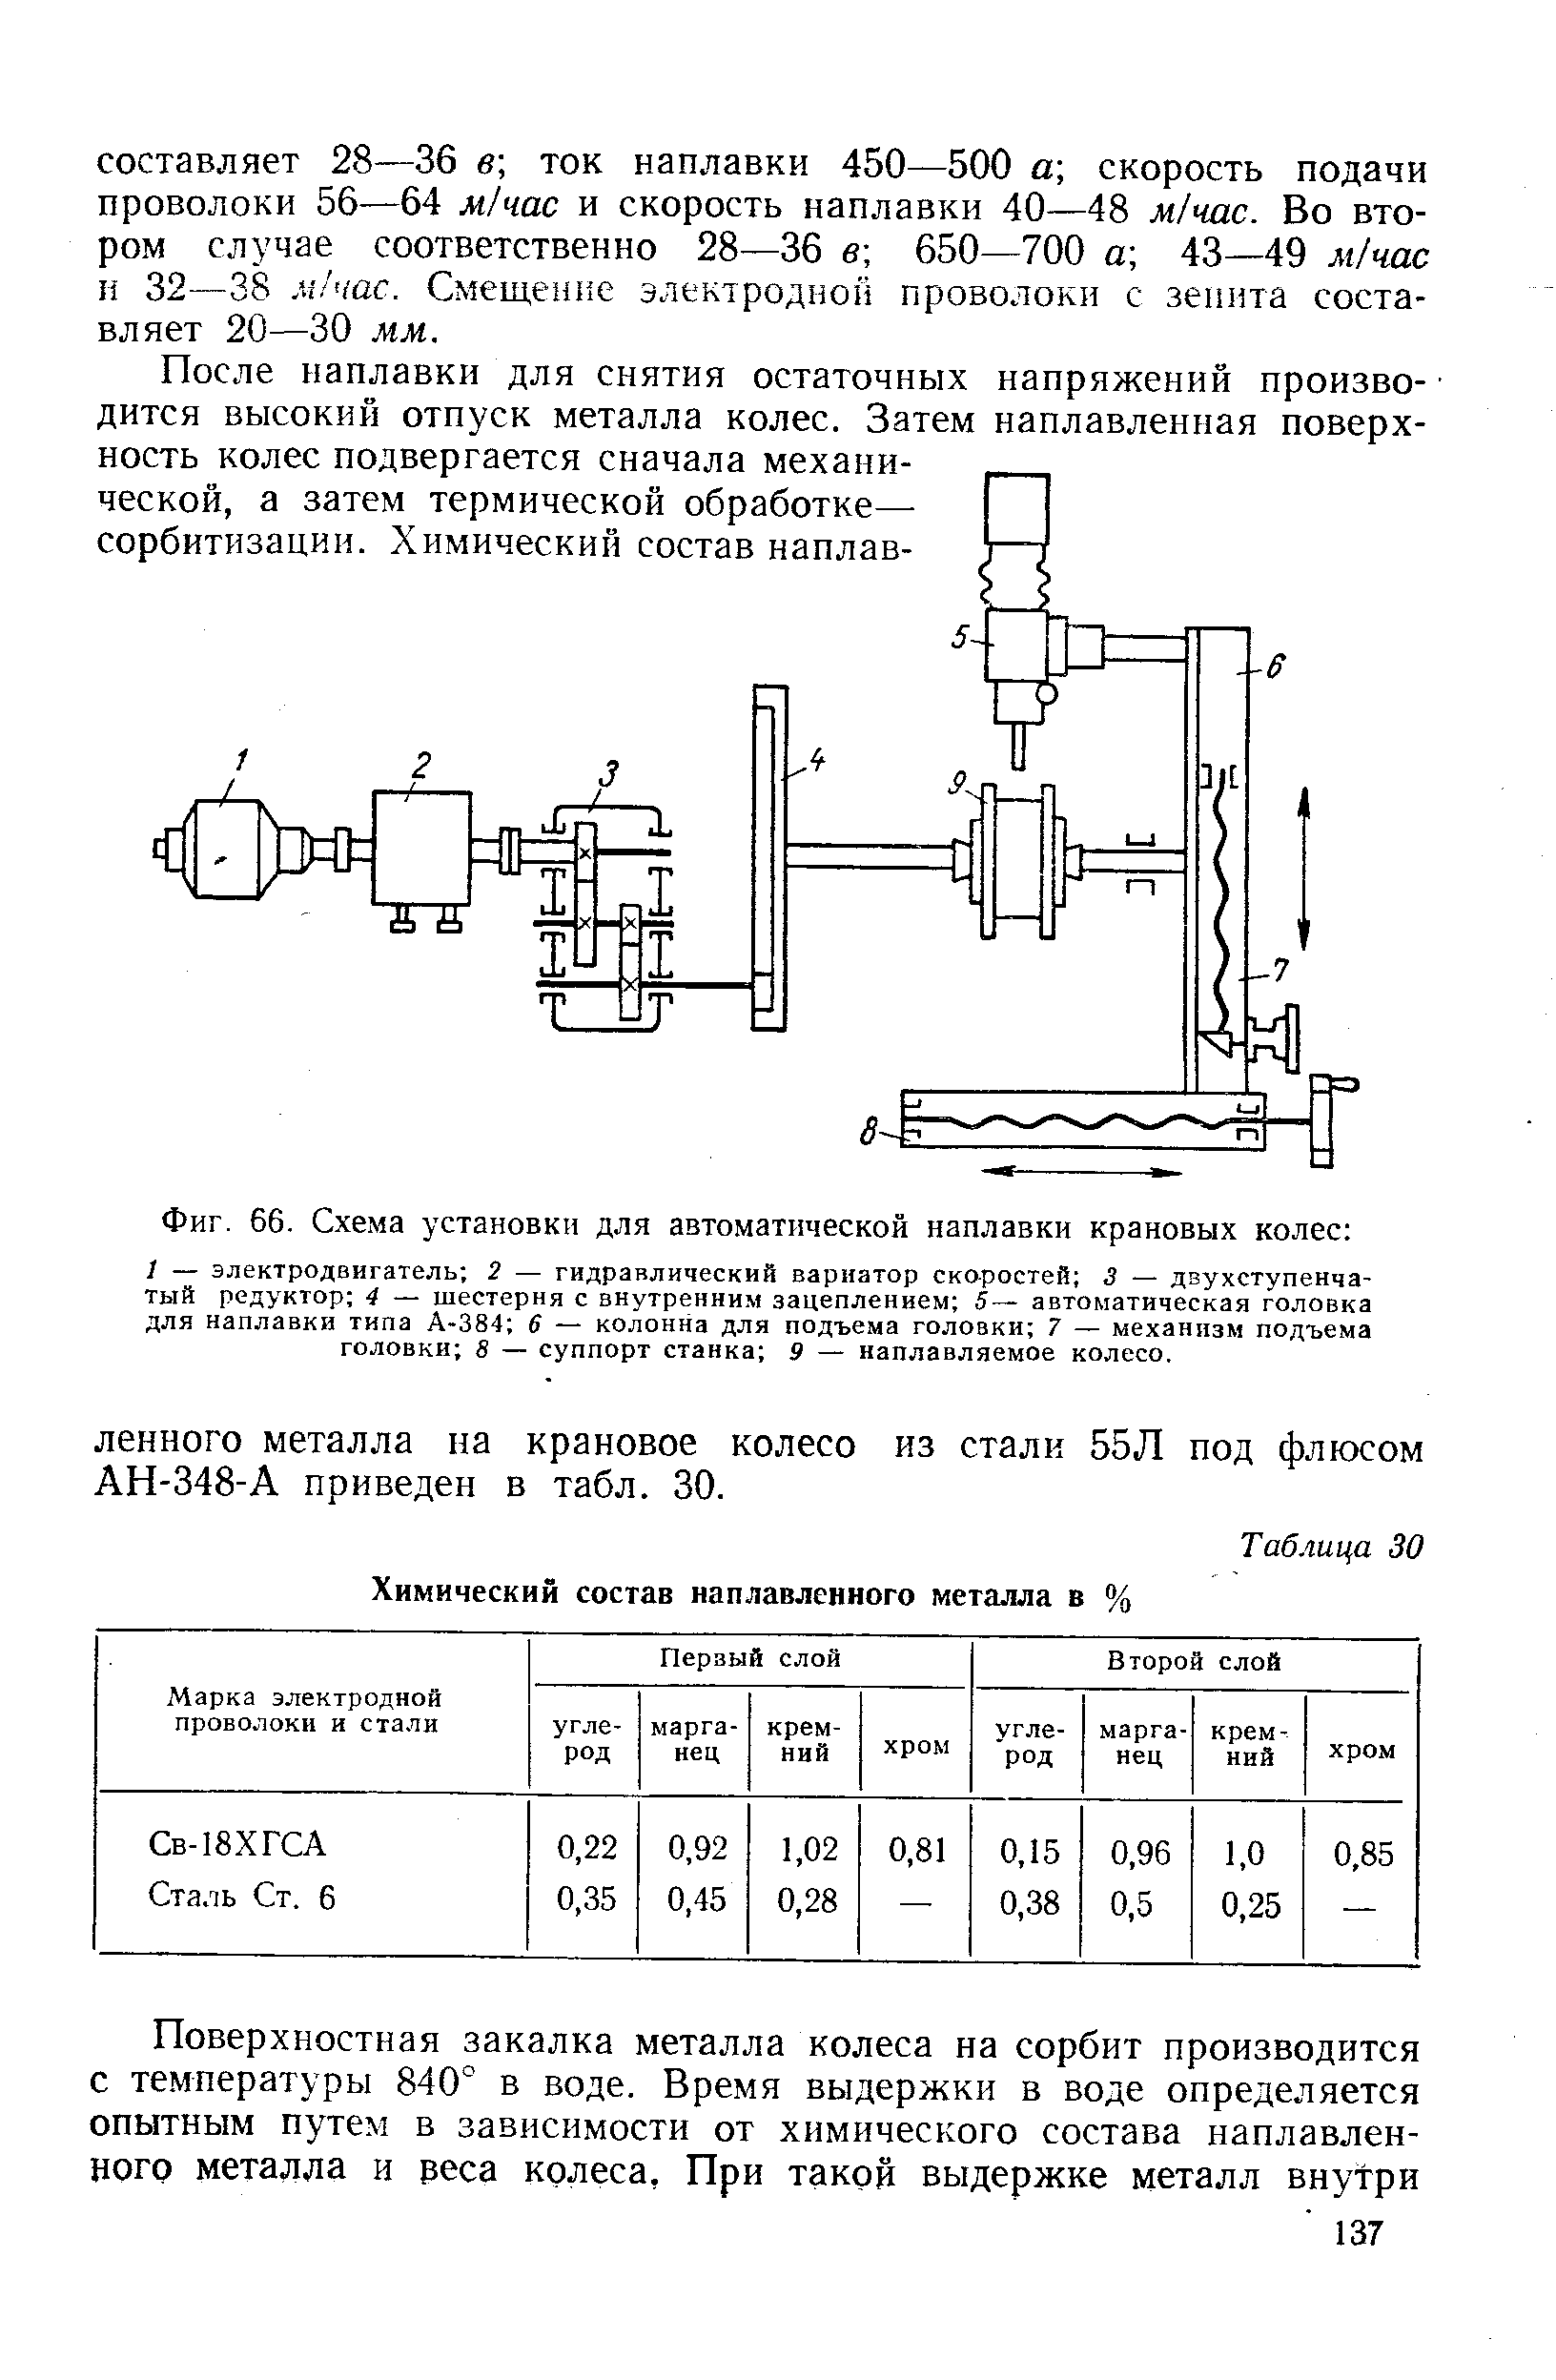 Фиг. 66. Схема установки для автоматической наплавки крановых колес 
